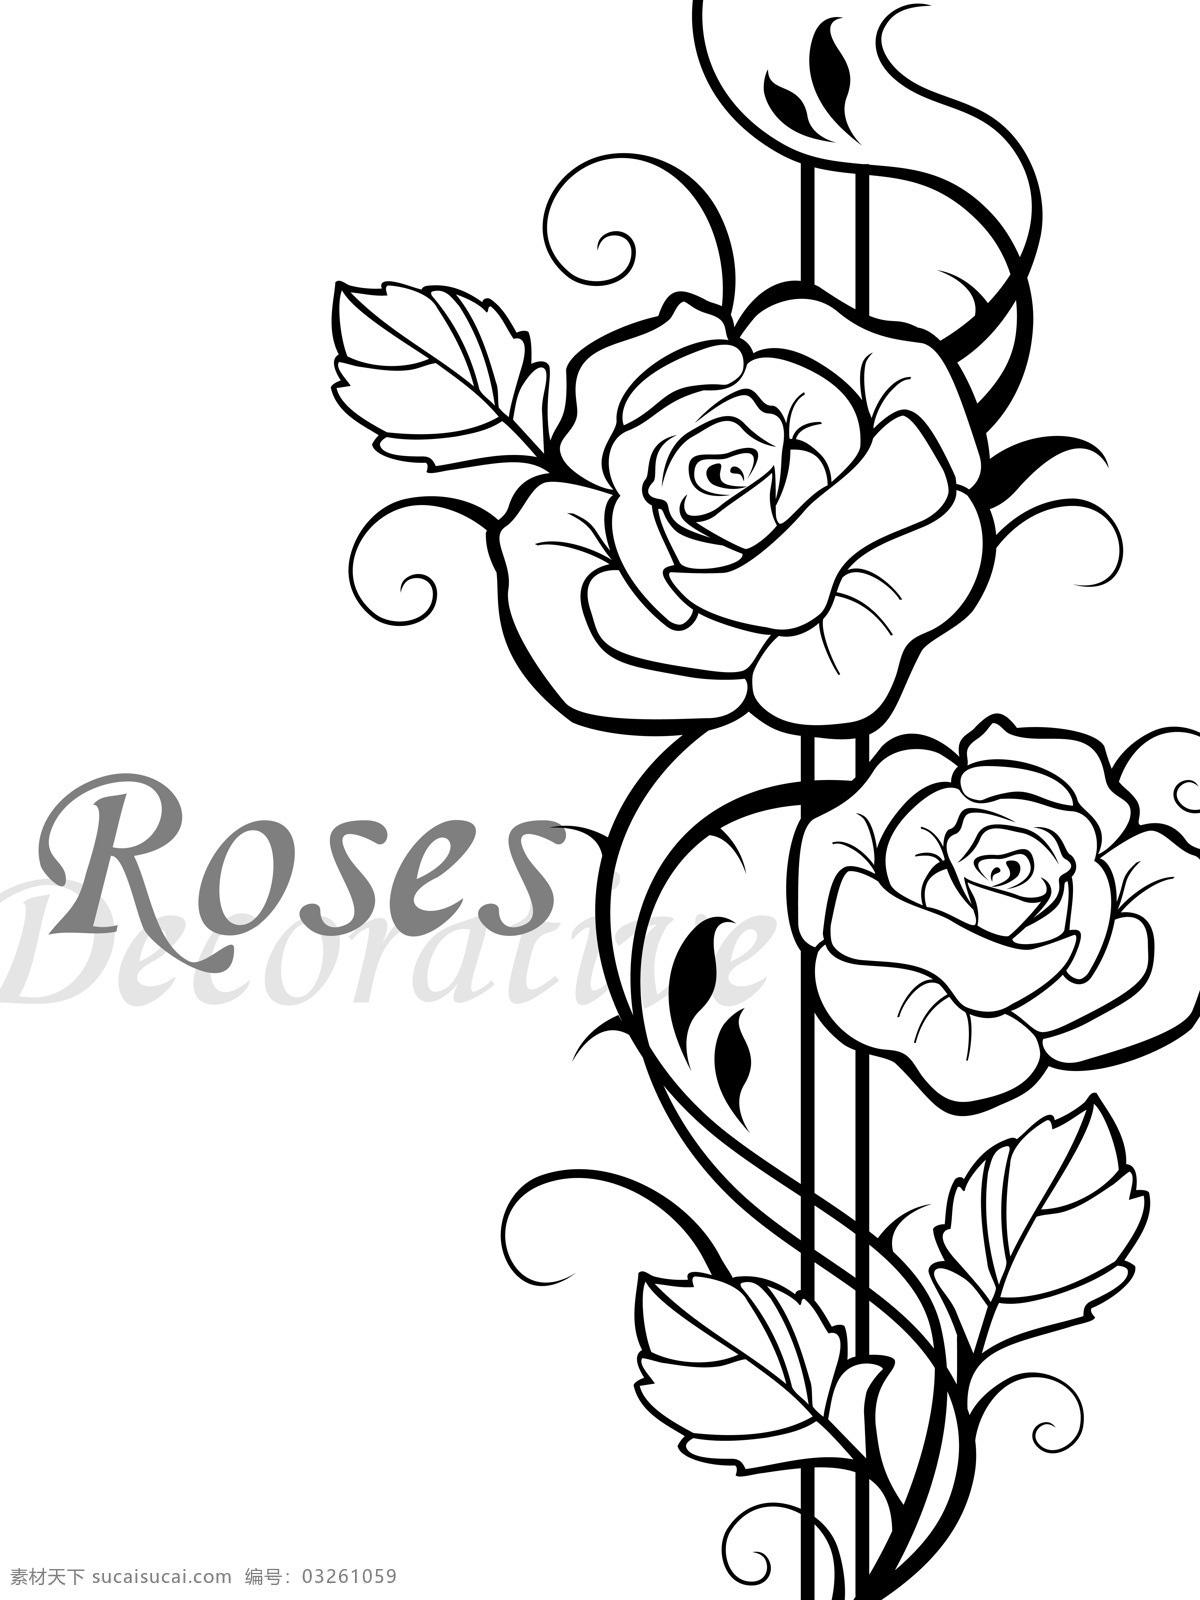 玫瑰免费下载 底纹边框 黑白 玫瑰 线条 移门图案 roses 2朵玫瑰花 妖娆 带刺的玫瑰 家居装饰素材